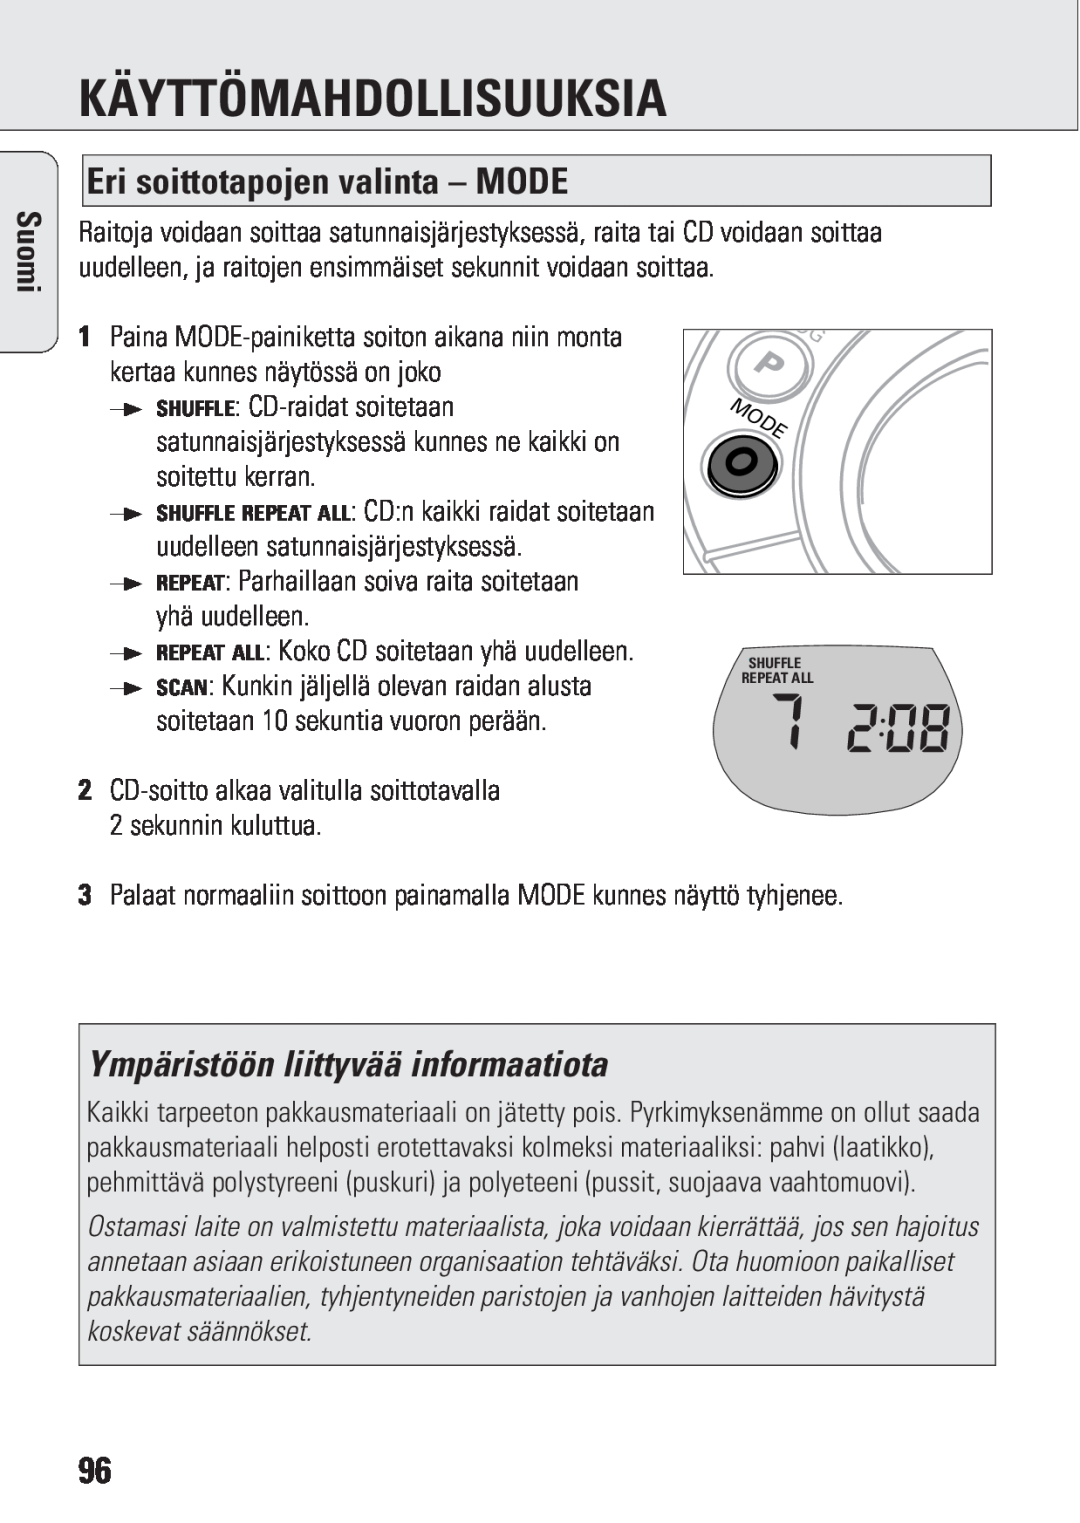 Philips ACT 7583 manual Eri soittotapojen valinta – MODE, Ympäristöön liittyvää informaatiota, Käyttömahdollisuuksia, Suomi 